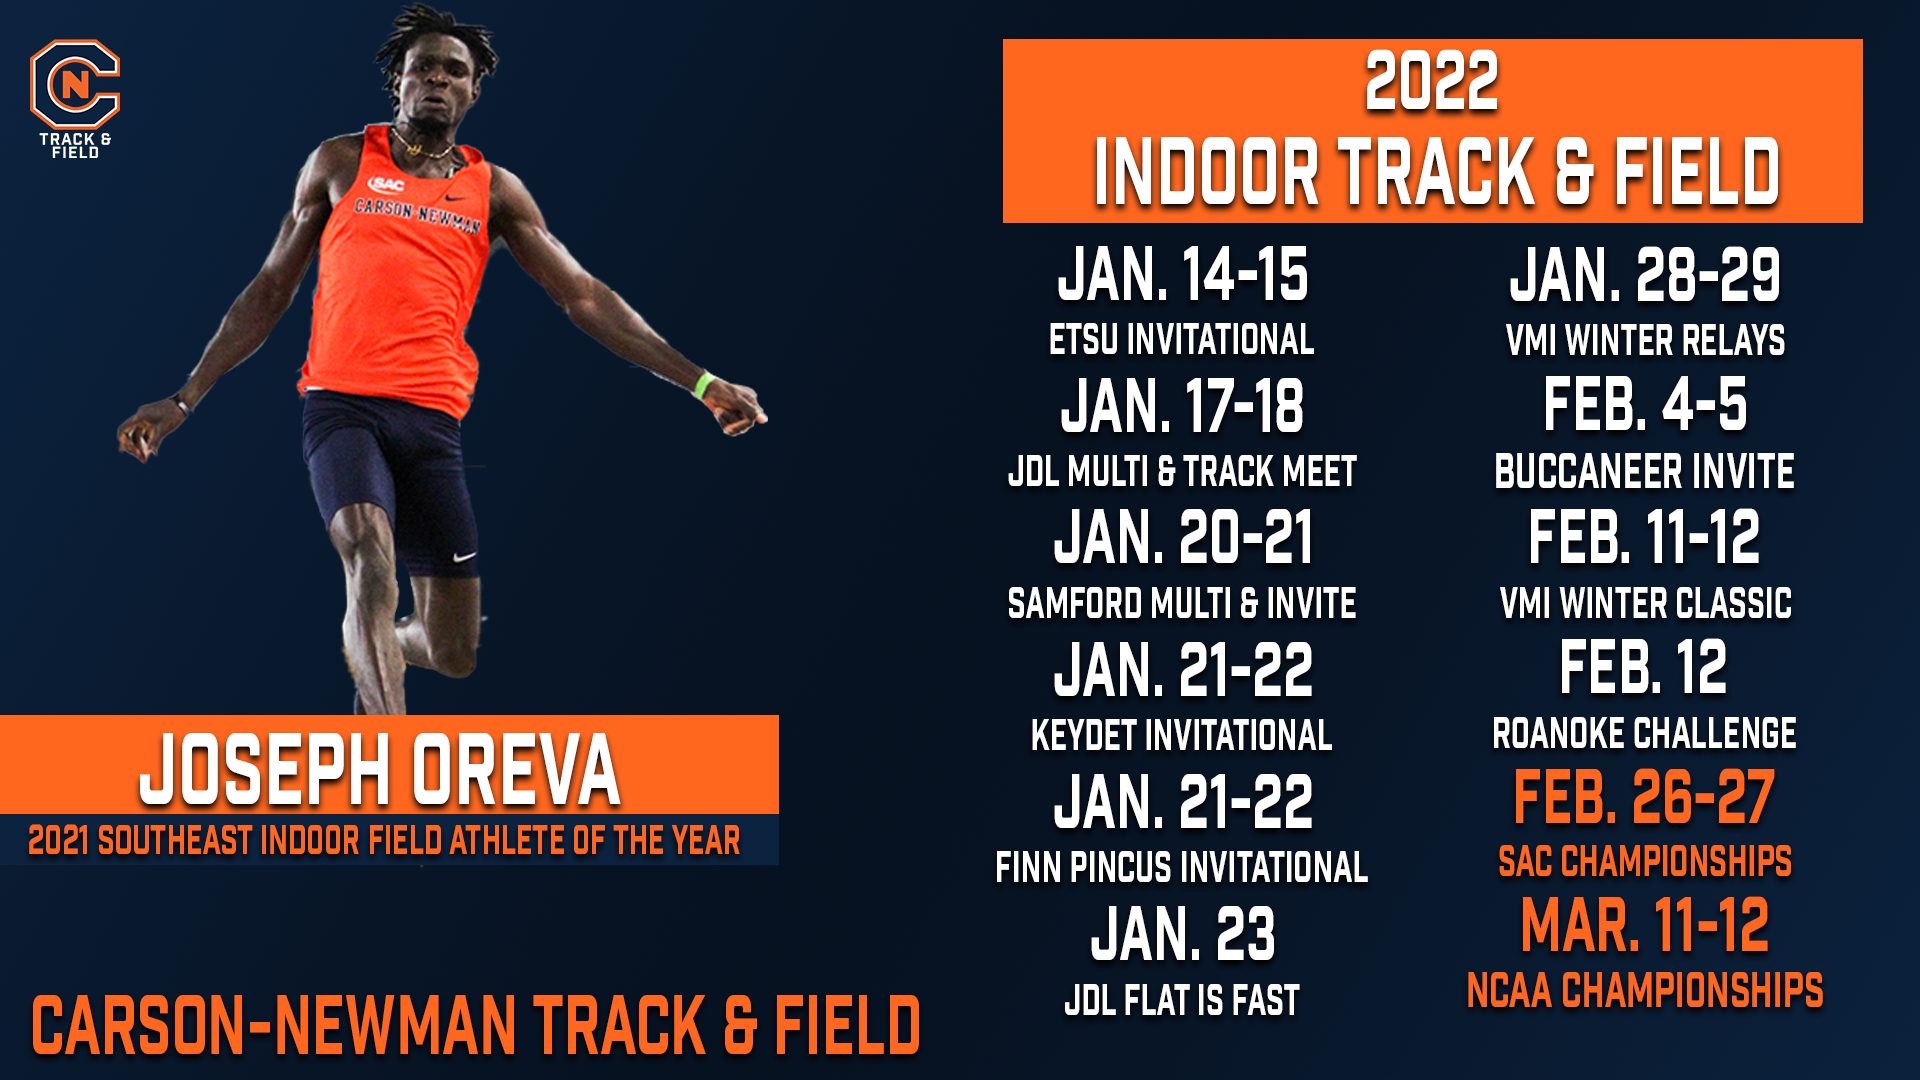 Track & Field releases 2022 indoor and outdoor schedule